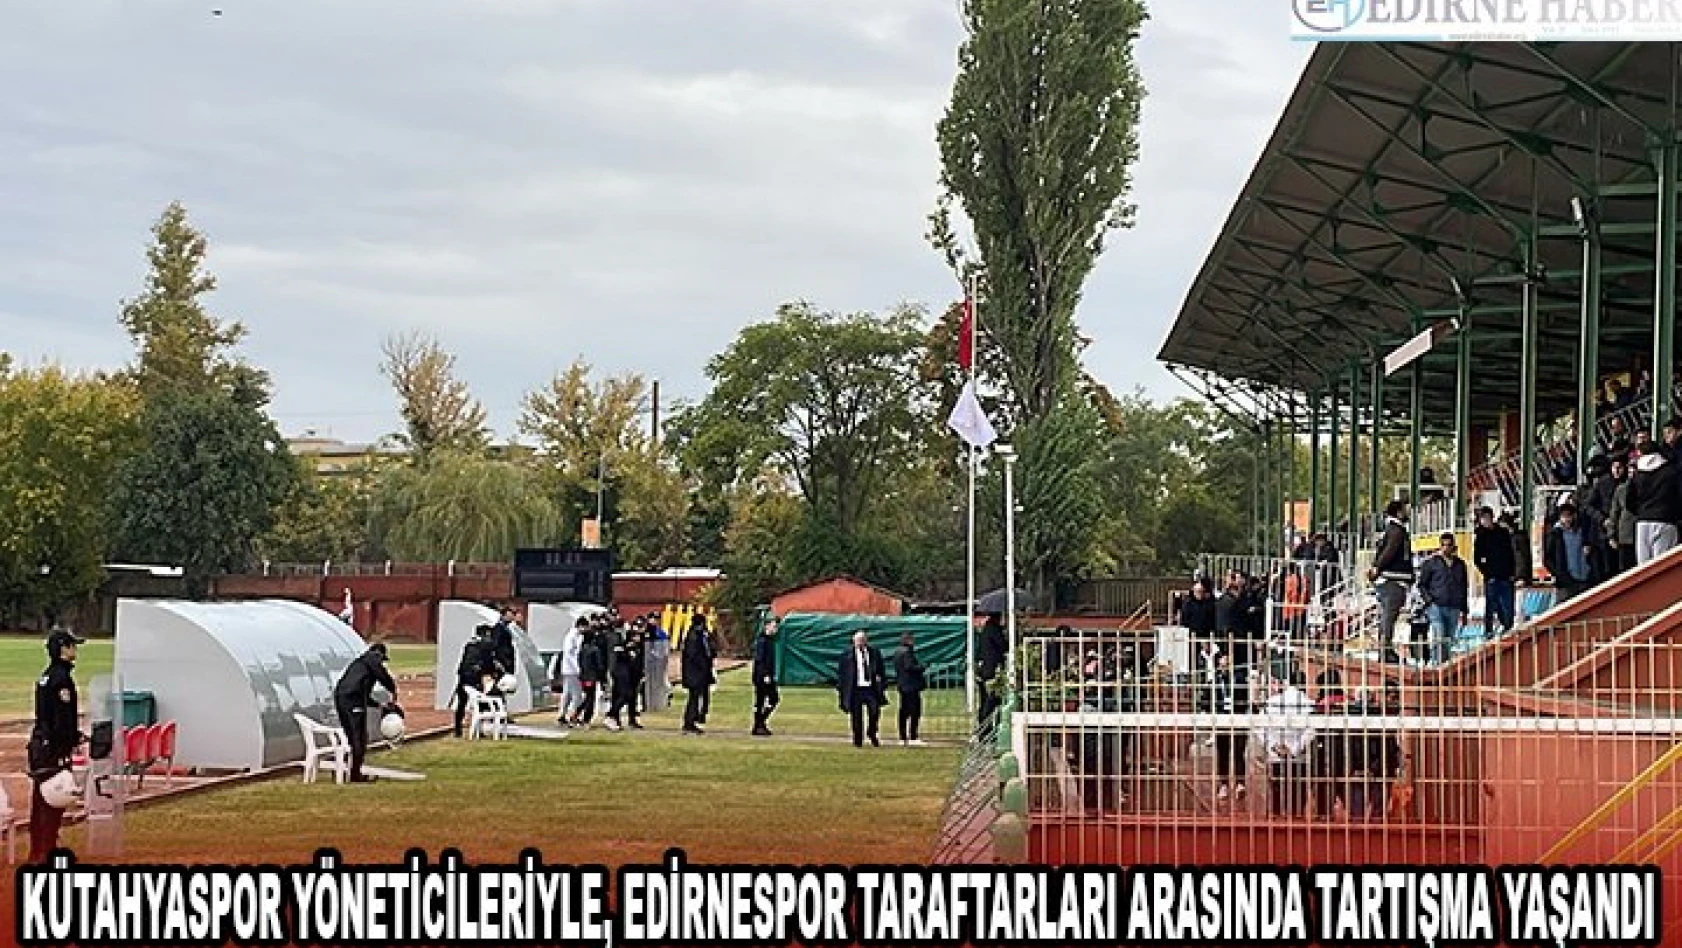 Kütahyaspor yöneticileriyle, Edirnespor taraftarları arasında tartışma yaşandı